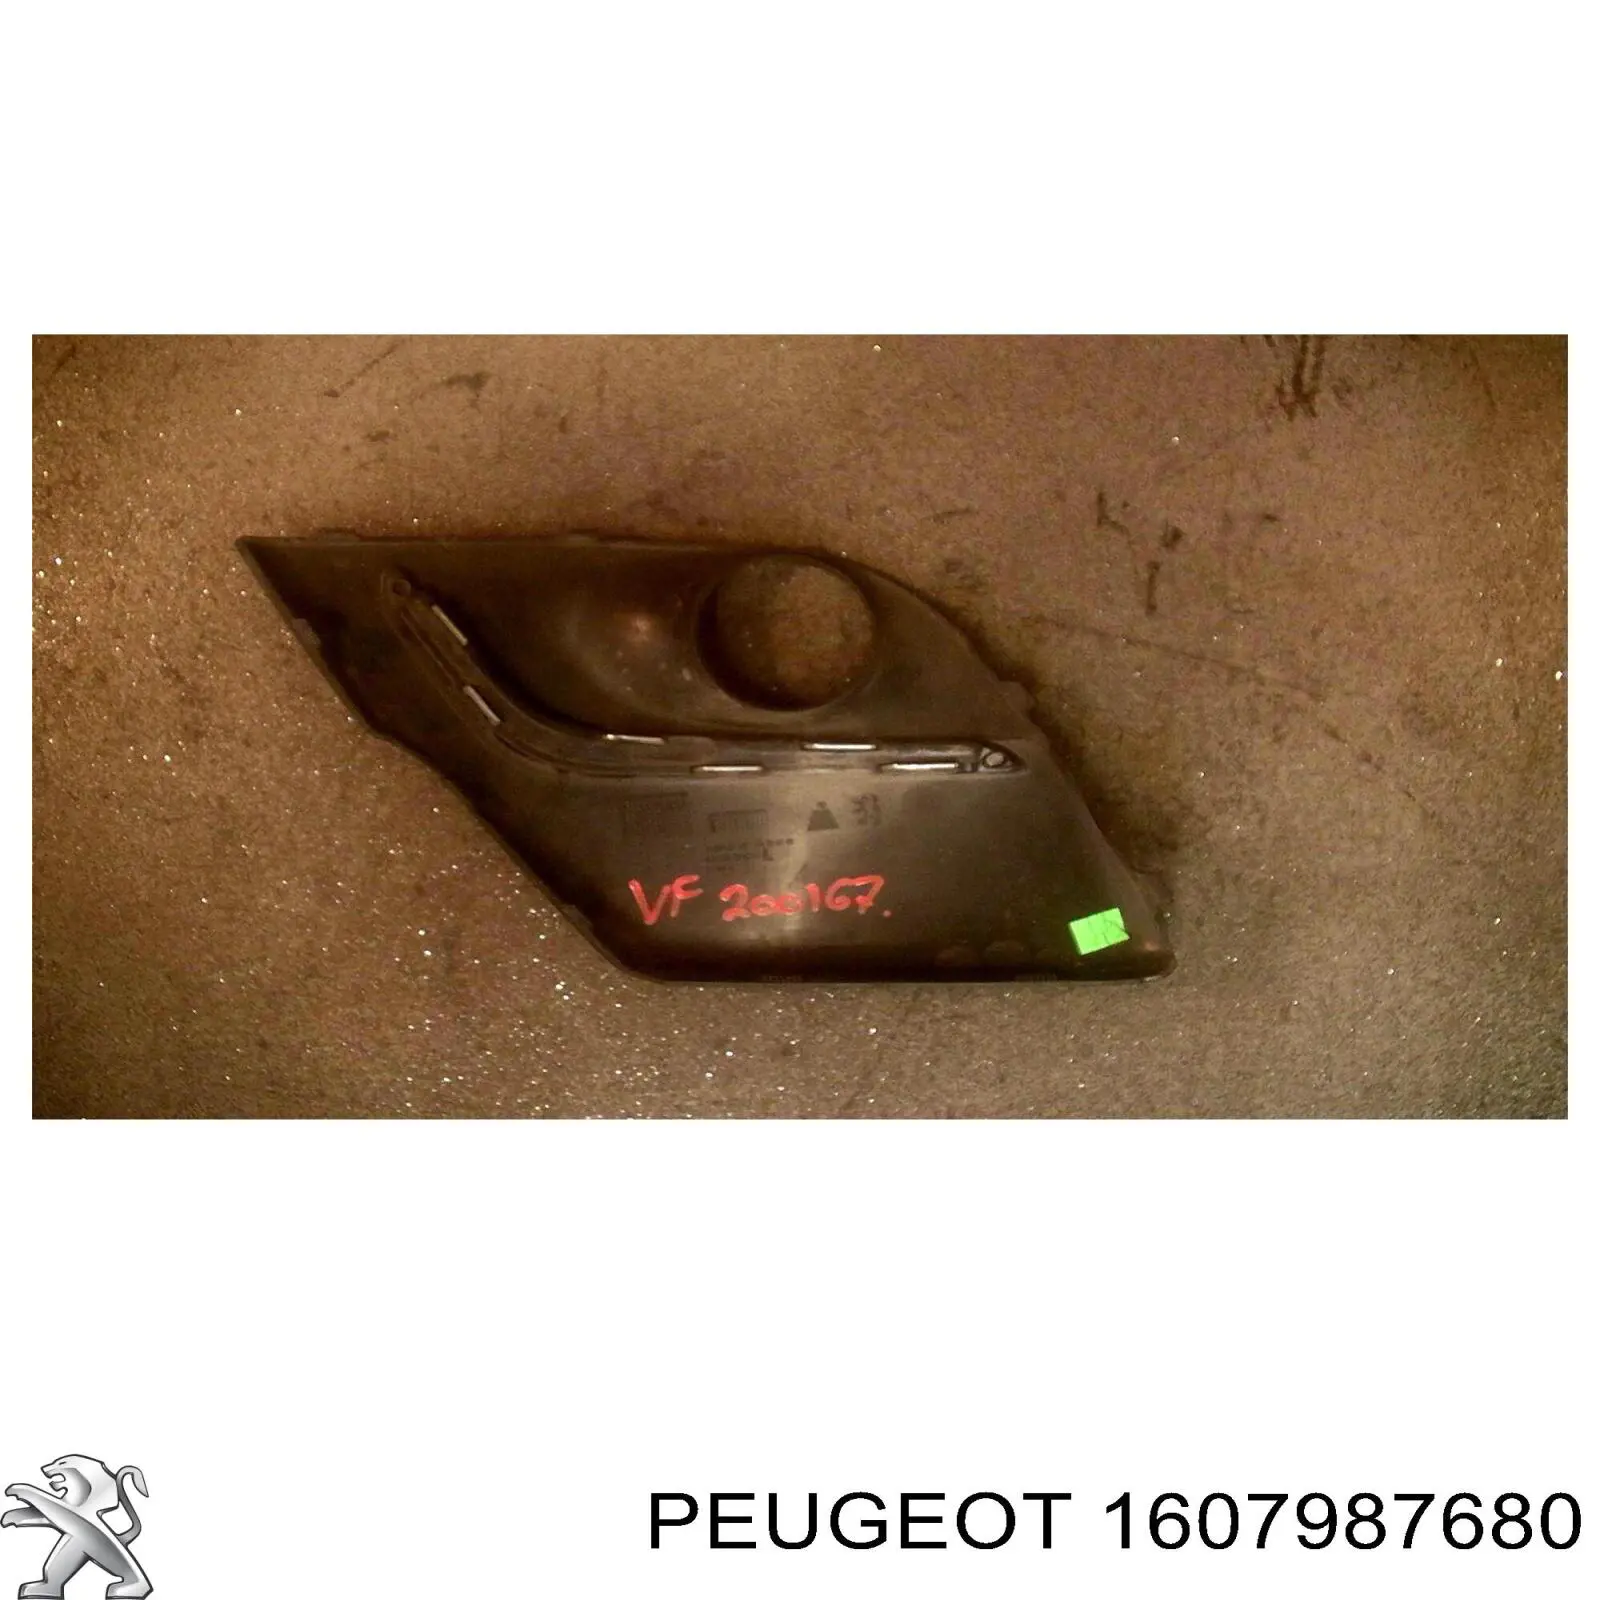 1607987680 Peugeot/Citroen rejilla del parachoques delantera izquierda